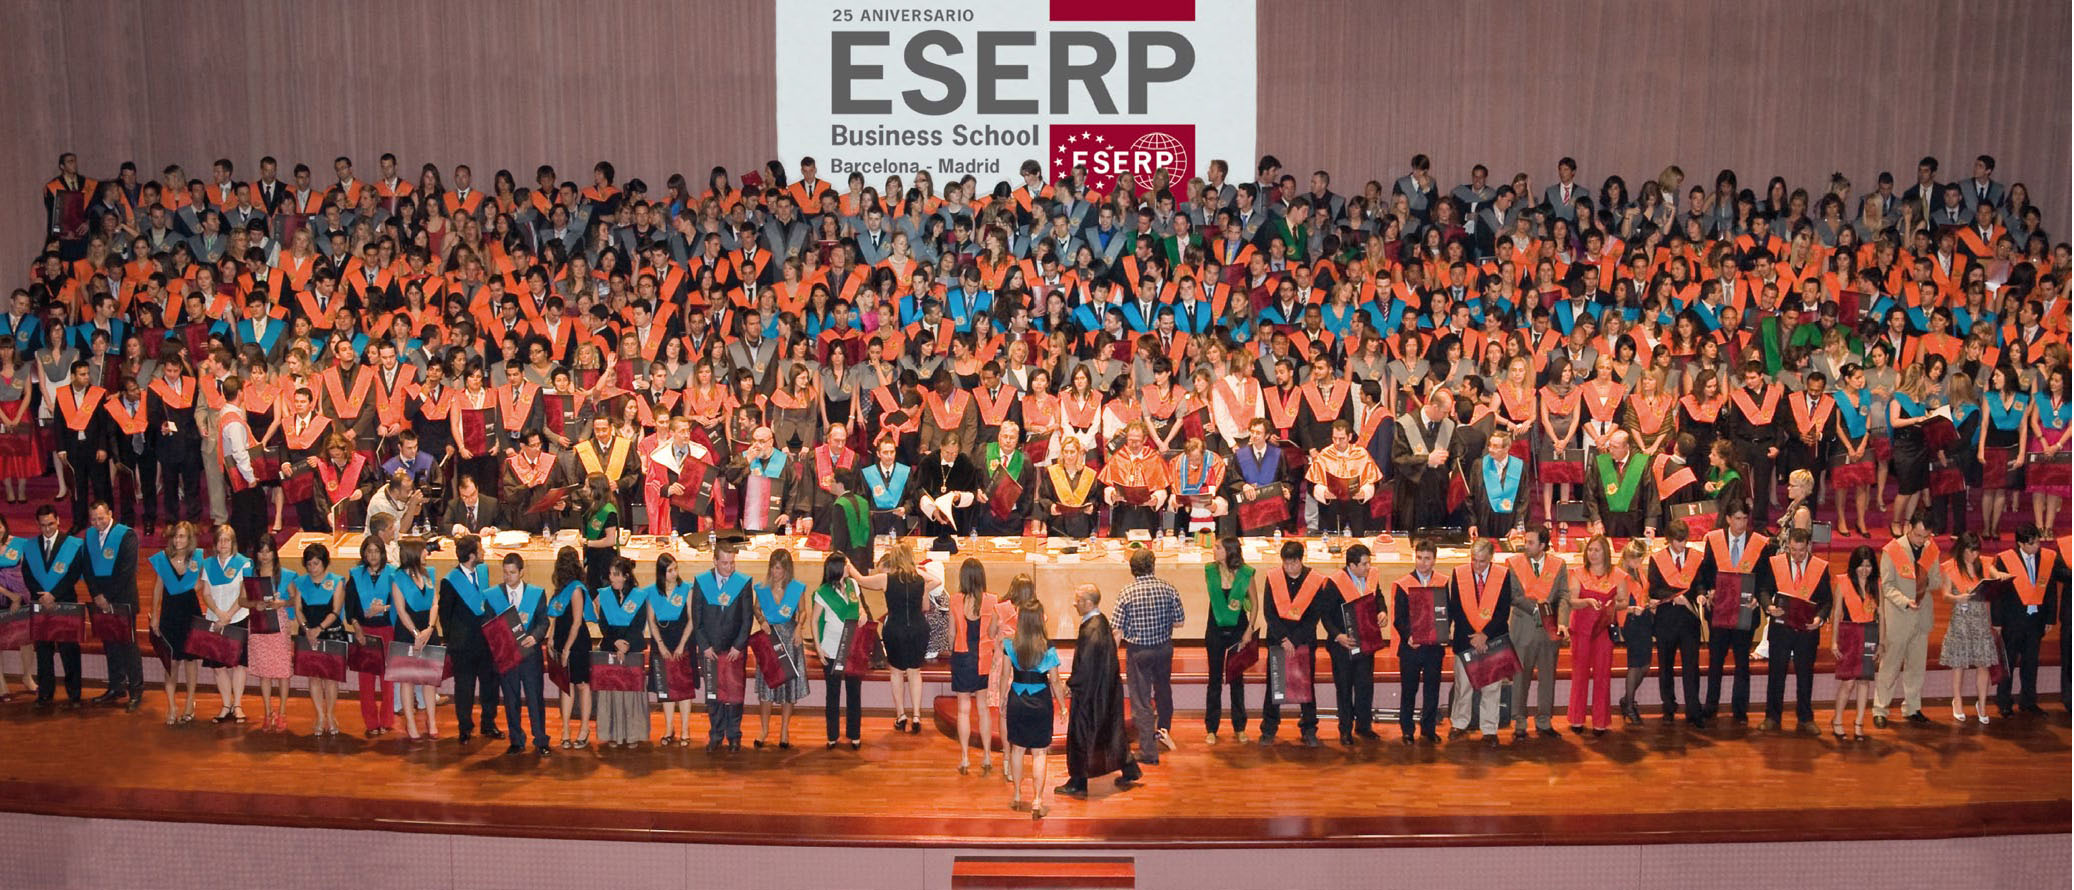 Du học Tây Ban Nha - Chương trình Top Up trường kinh doanh ESERP